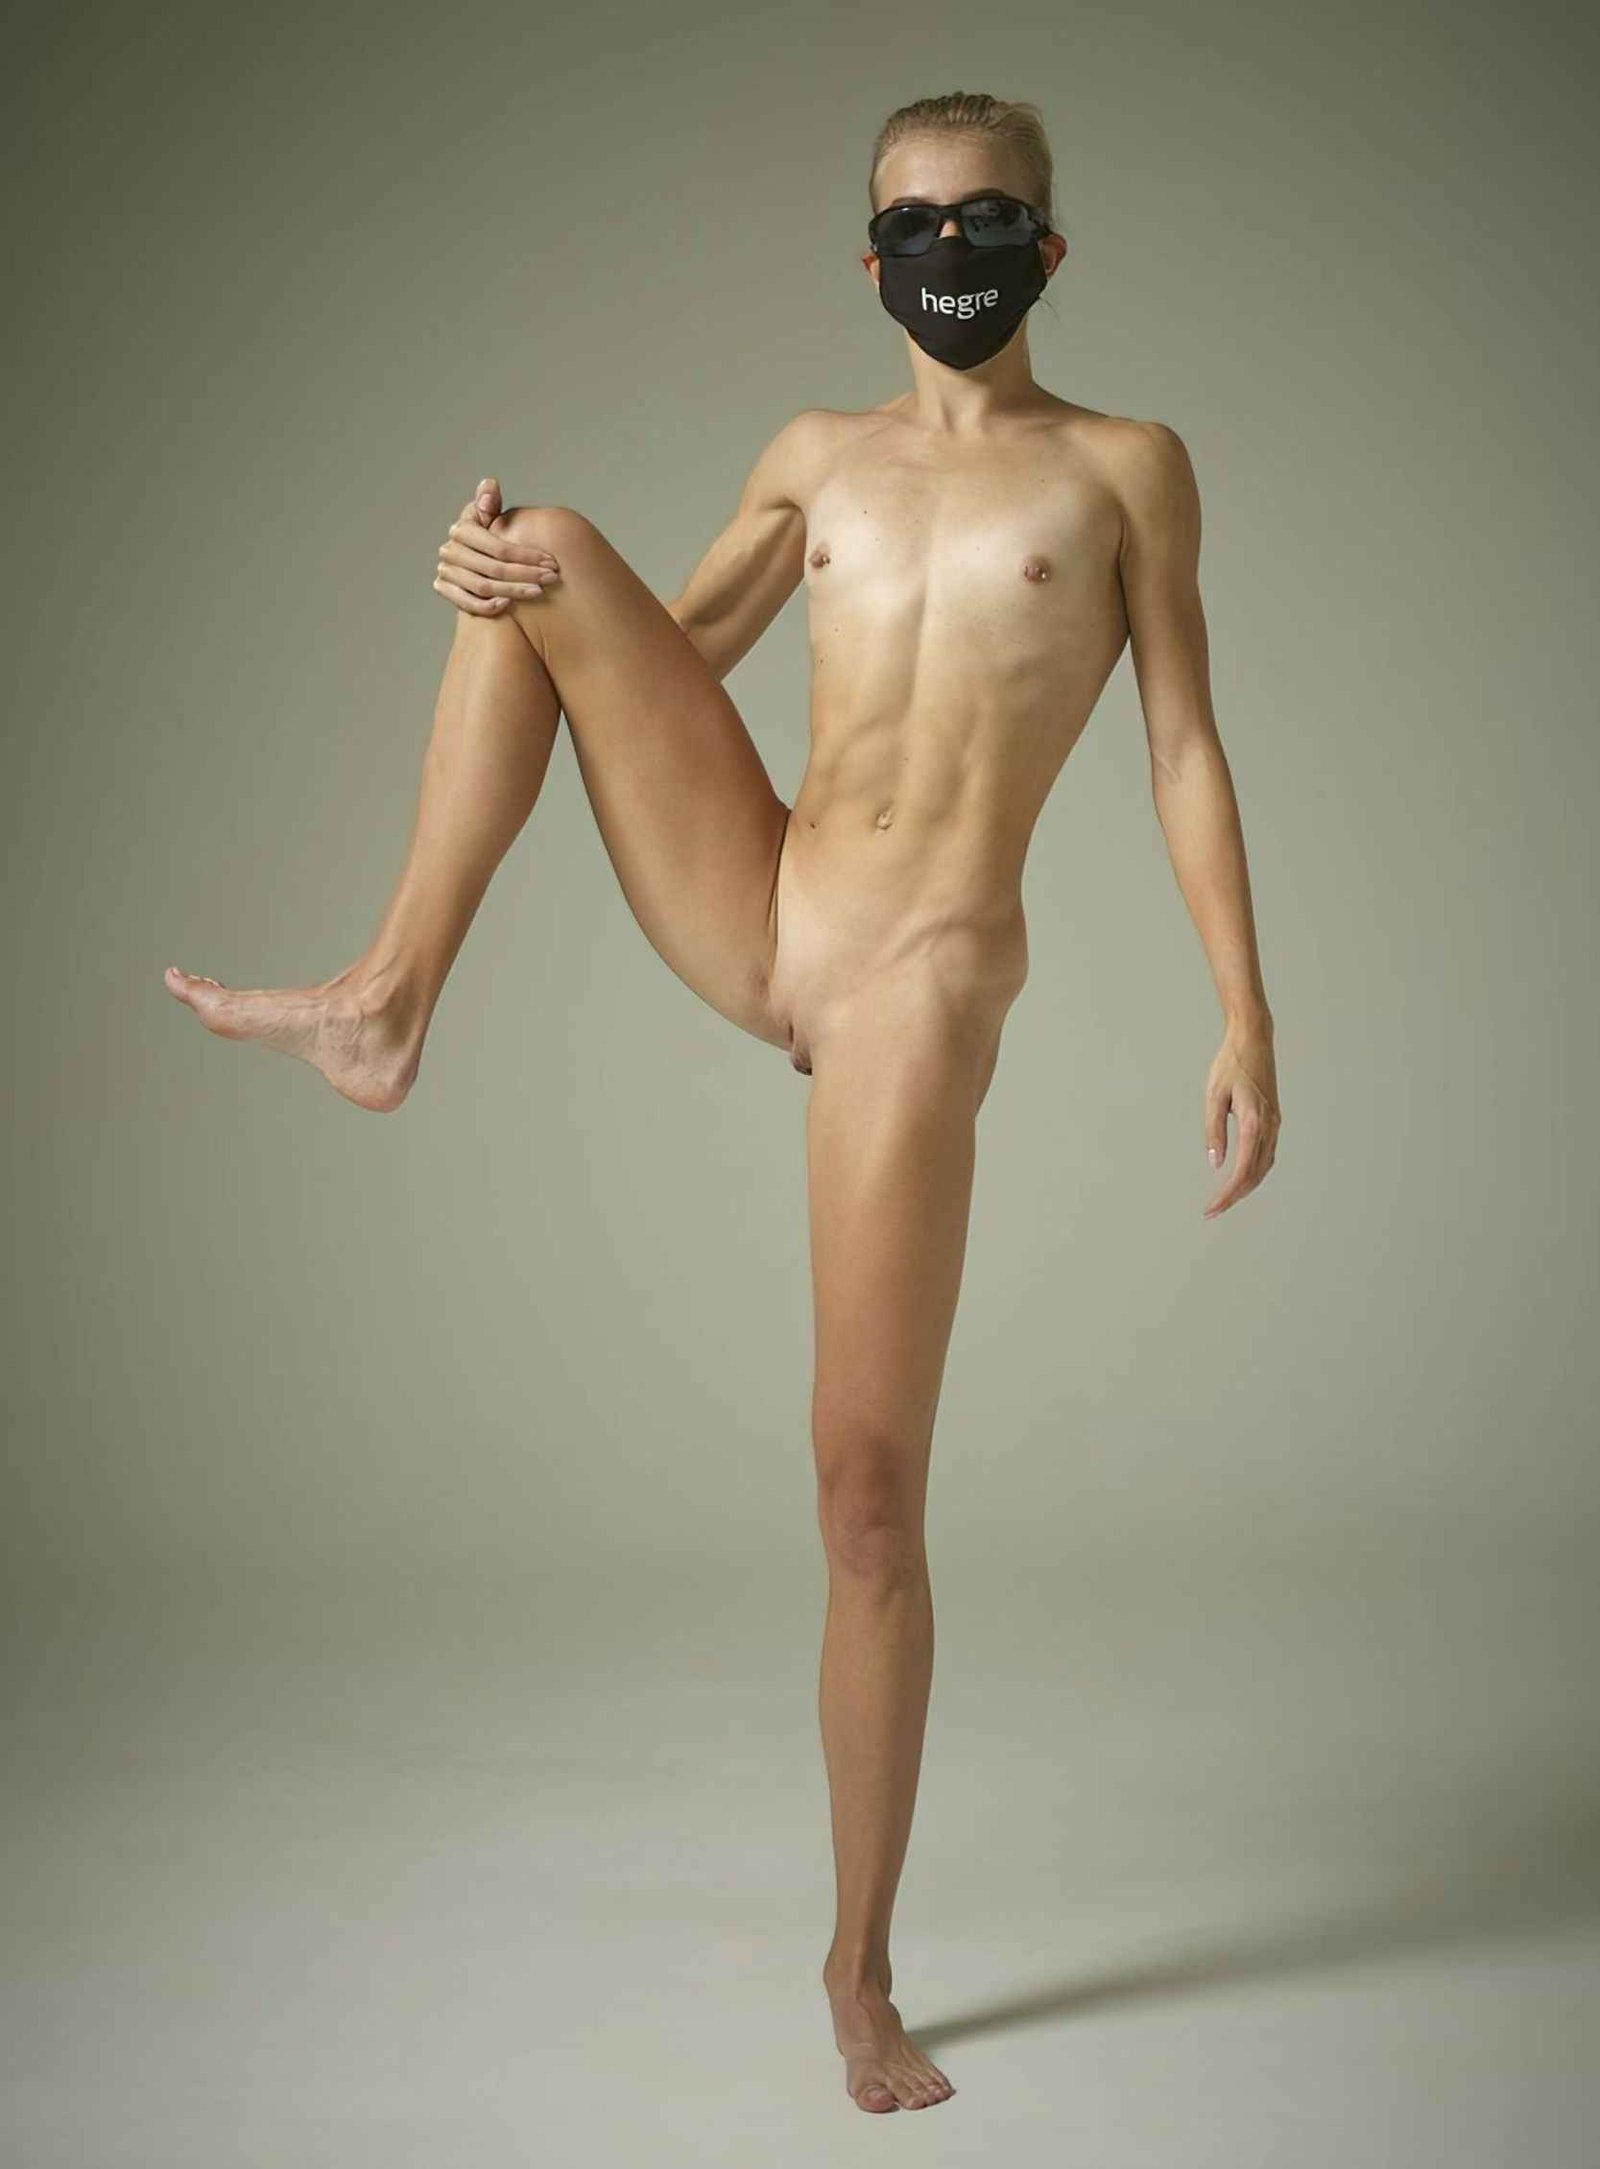 Une athlète olympique australienne pose nue